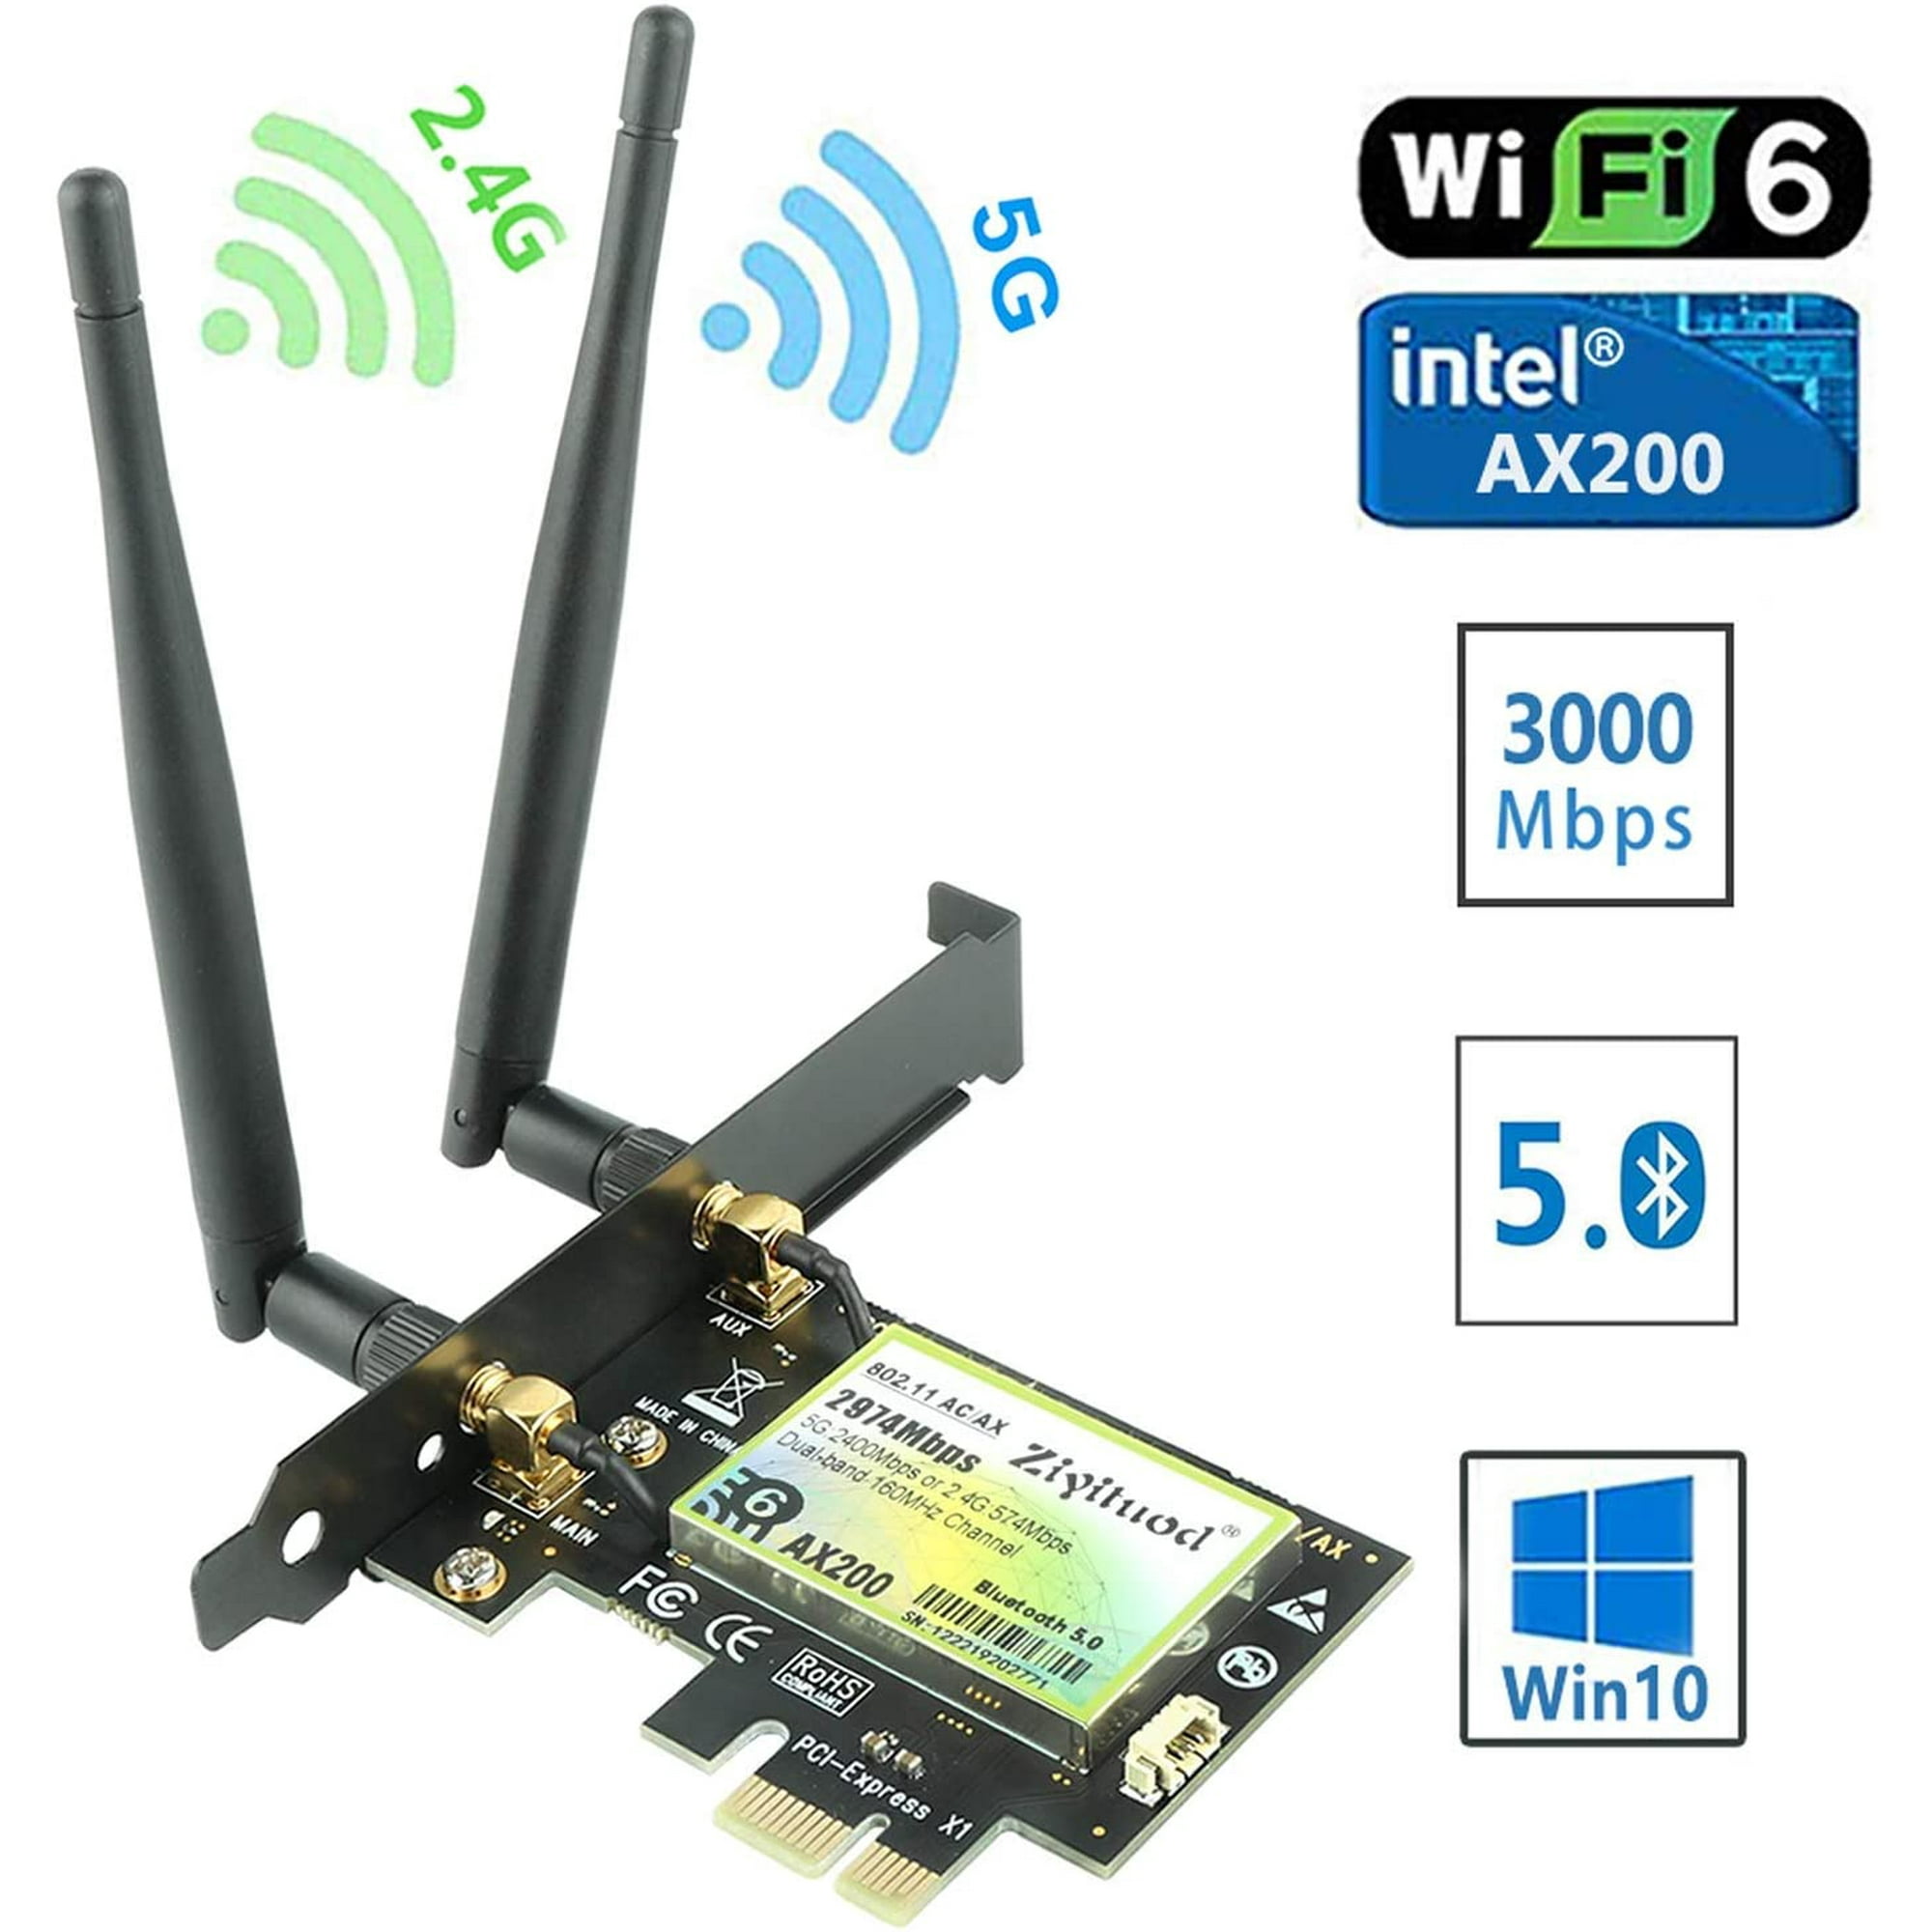 Intel wi fi 6 ax200